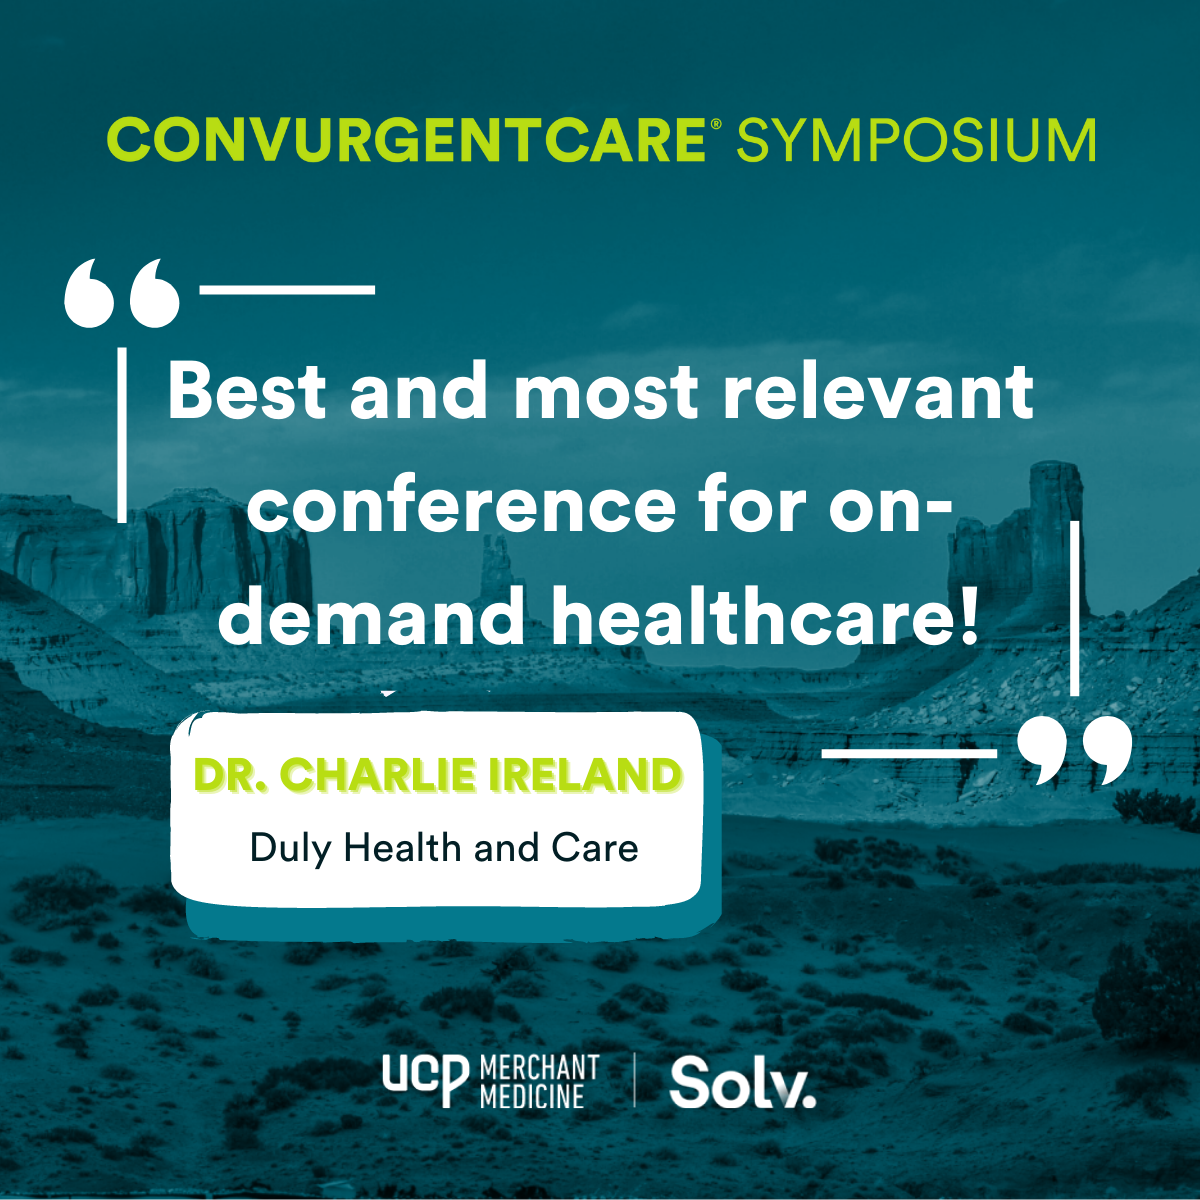 quote about urgent care symposium